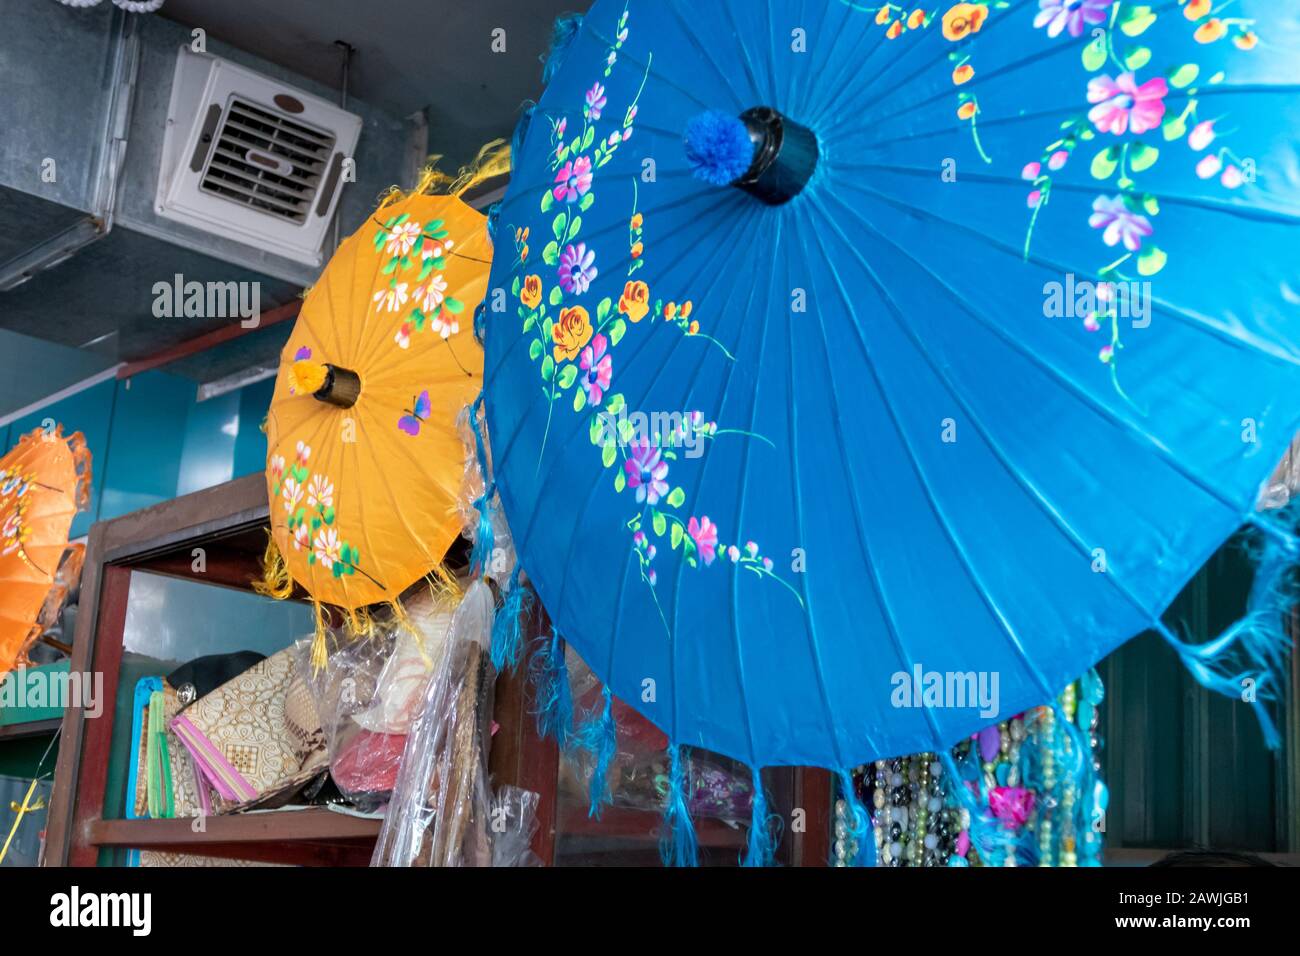 Pathein, MYANMAR - 26. JANUAR 2020: Imbisshändler in Pathein, der größten Stadt und Hauptstadt der Ayeyarwady Region. Stockfoto